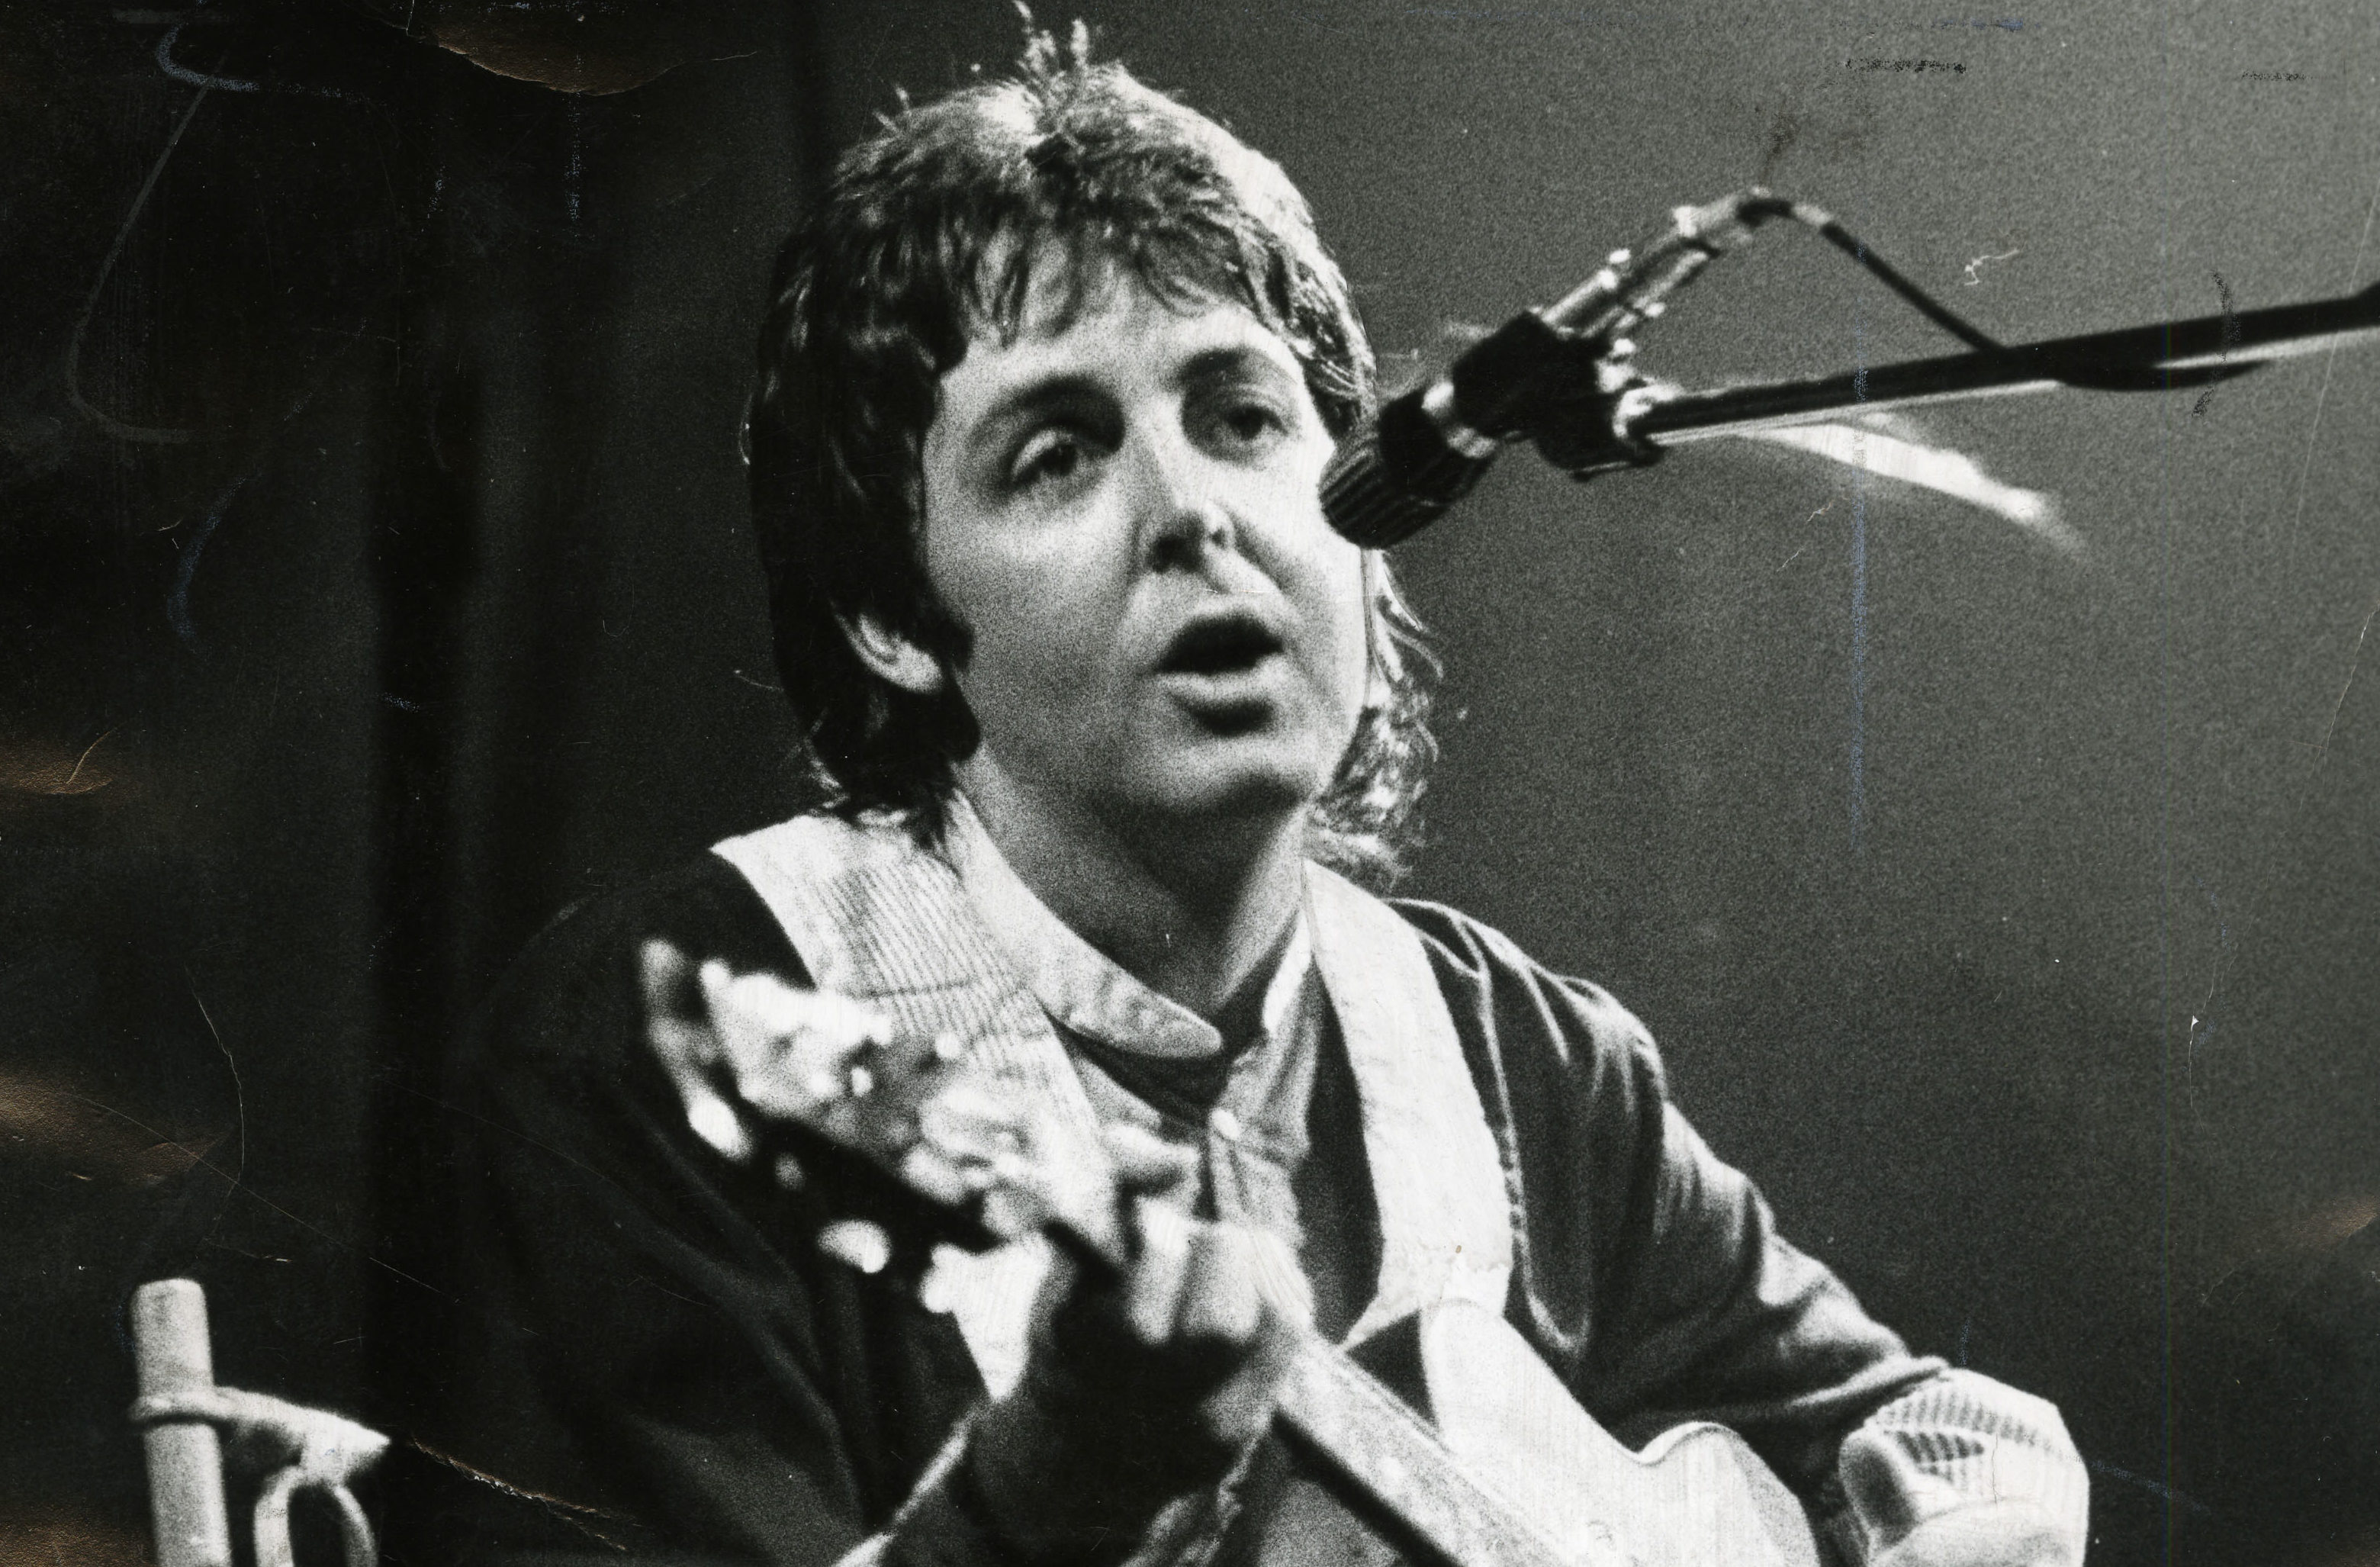 Káº¿t quáº£ hÃ¬nh áº£nh cho Paul McCartney